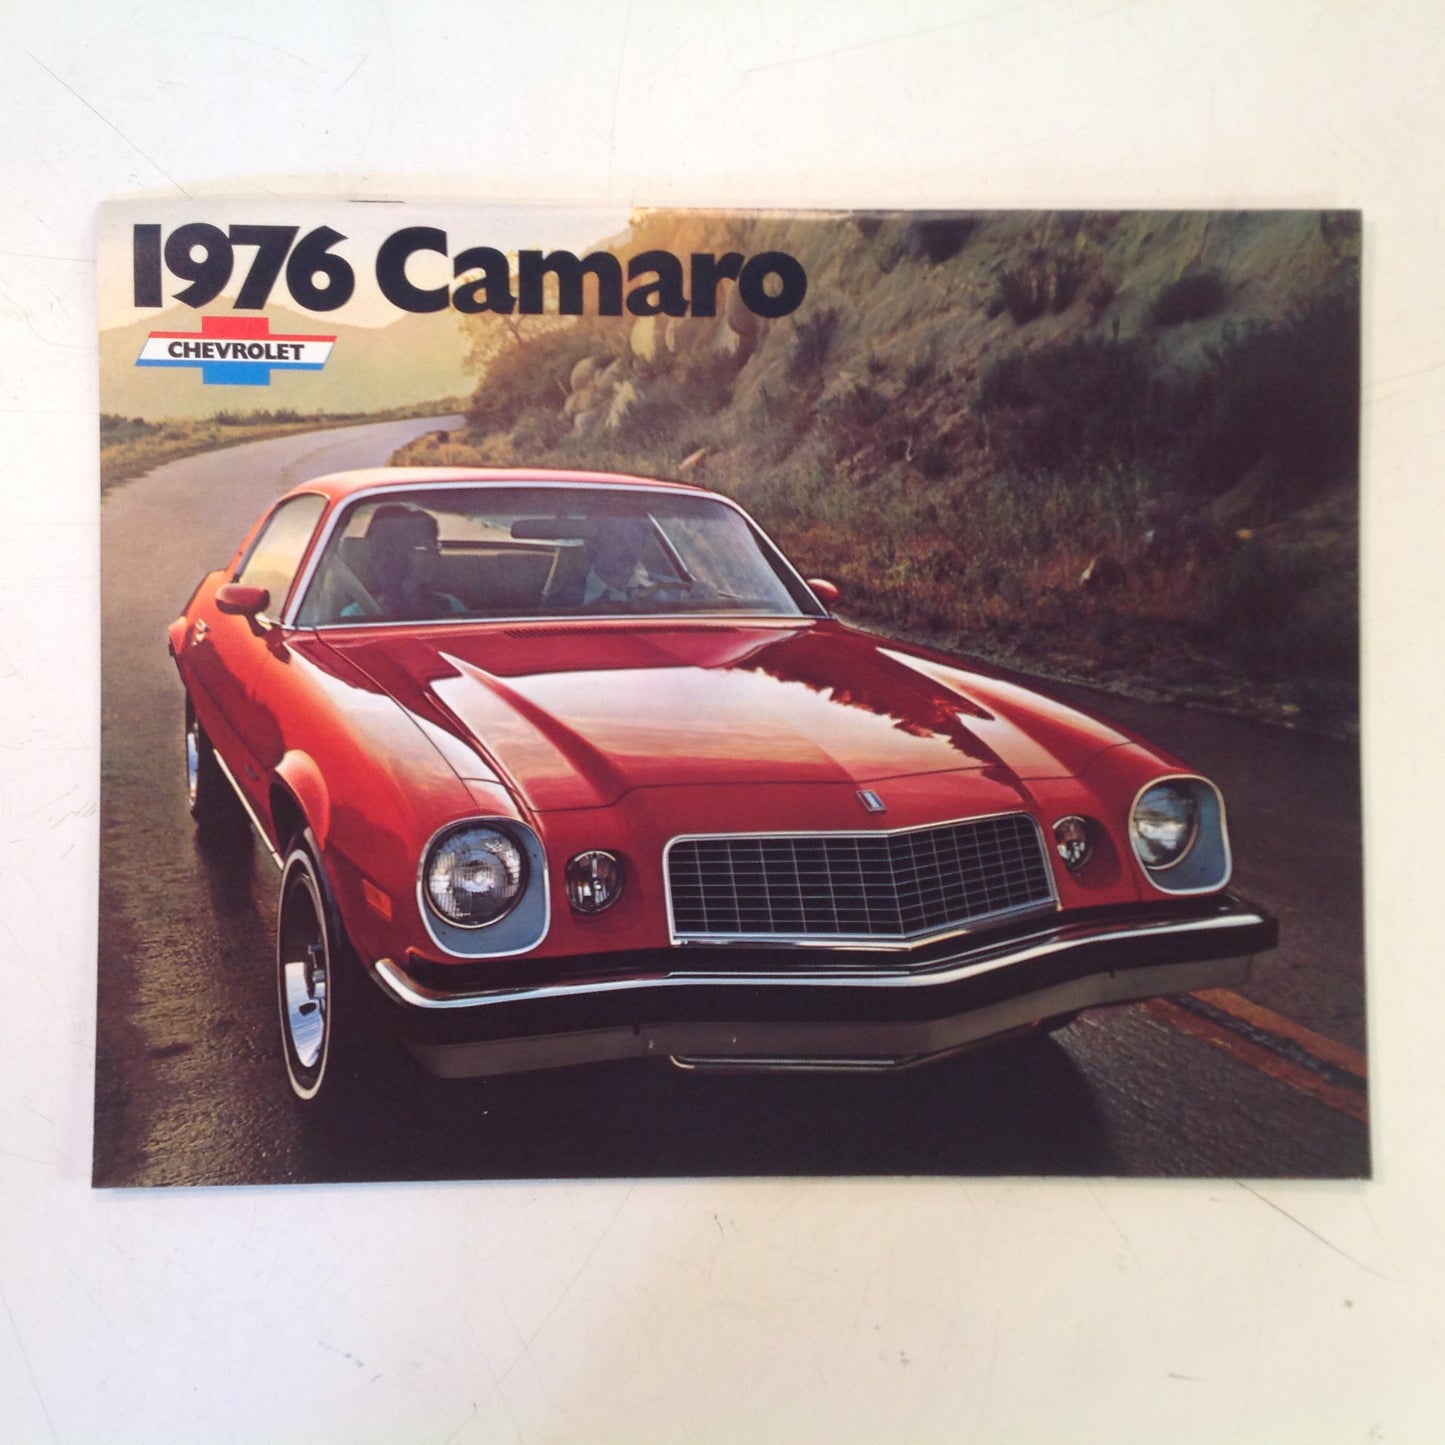 Vintage 1975 Chevrolet 1976 Camaro Informational Sales Brochure Color Photos GMC